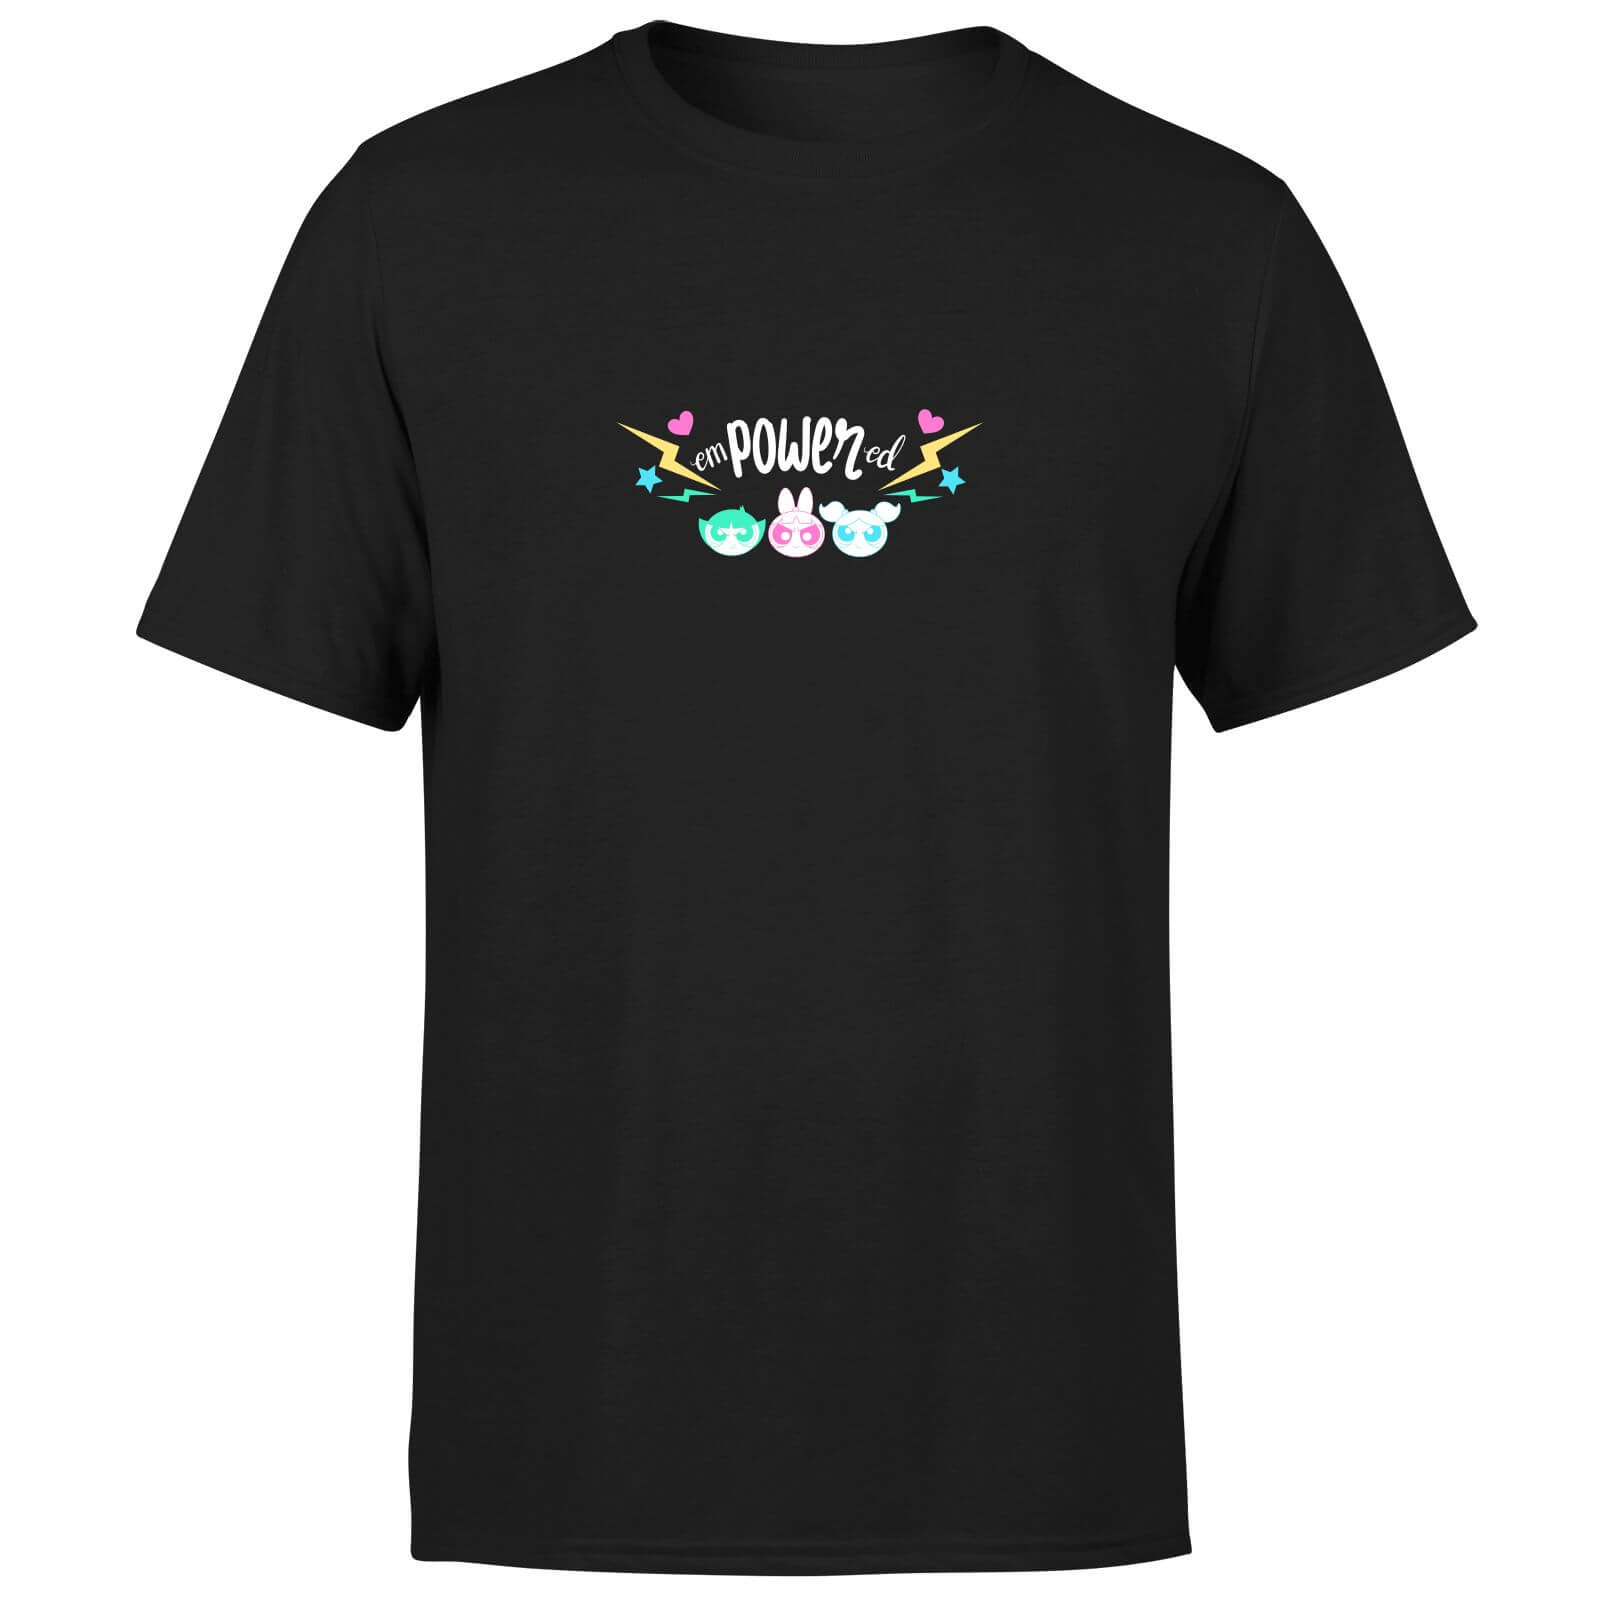 The Powerpuff Girls Empowered Unisex T-Shirt - Black - XS - Black